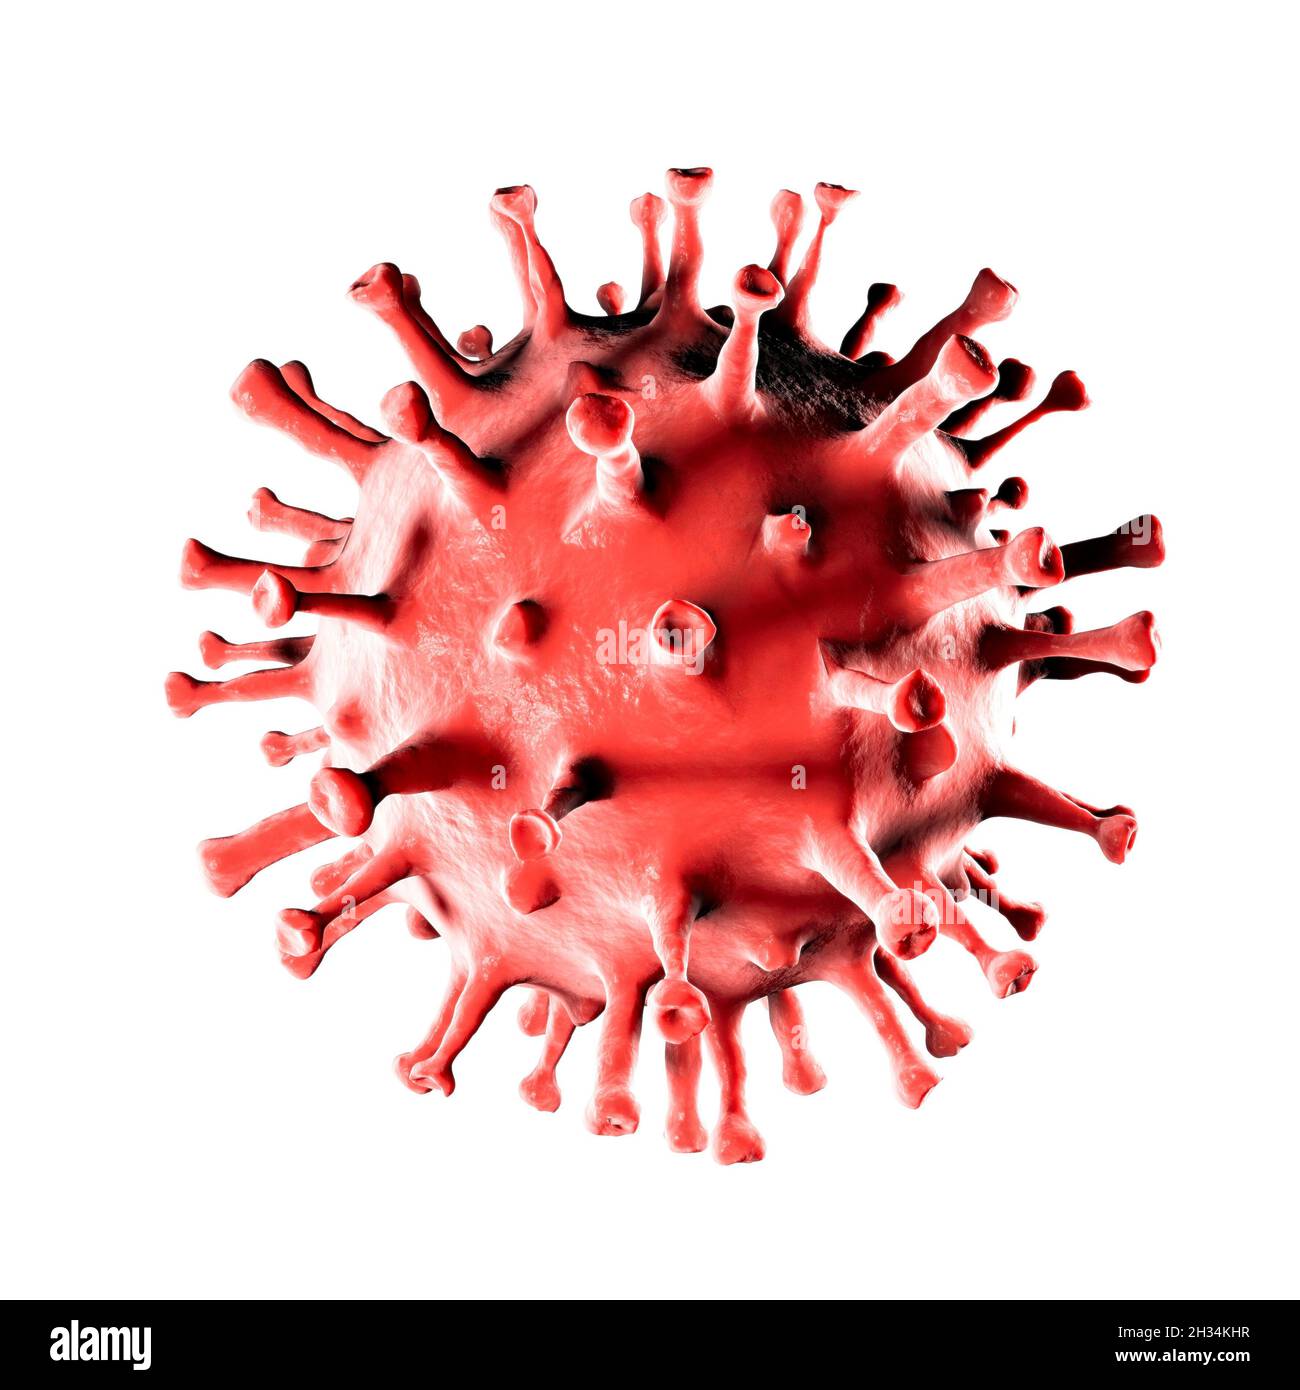 Virus, dettaglio visto al microscopio, mutazioni e varianti del coronavirus, sars-cov-2. Ingrandimento. Spazio di sfondo bianco. Covid-19 Foto Stock